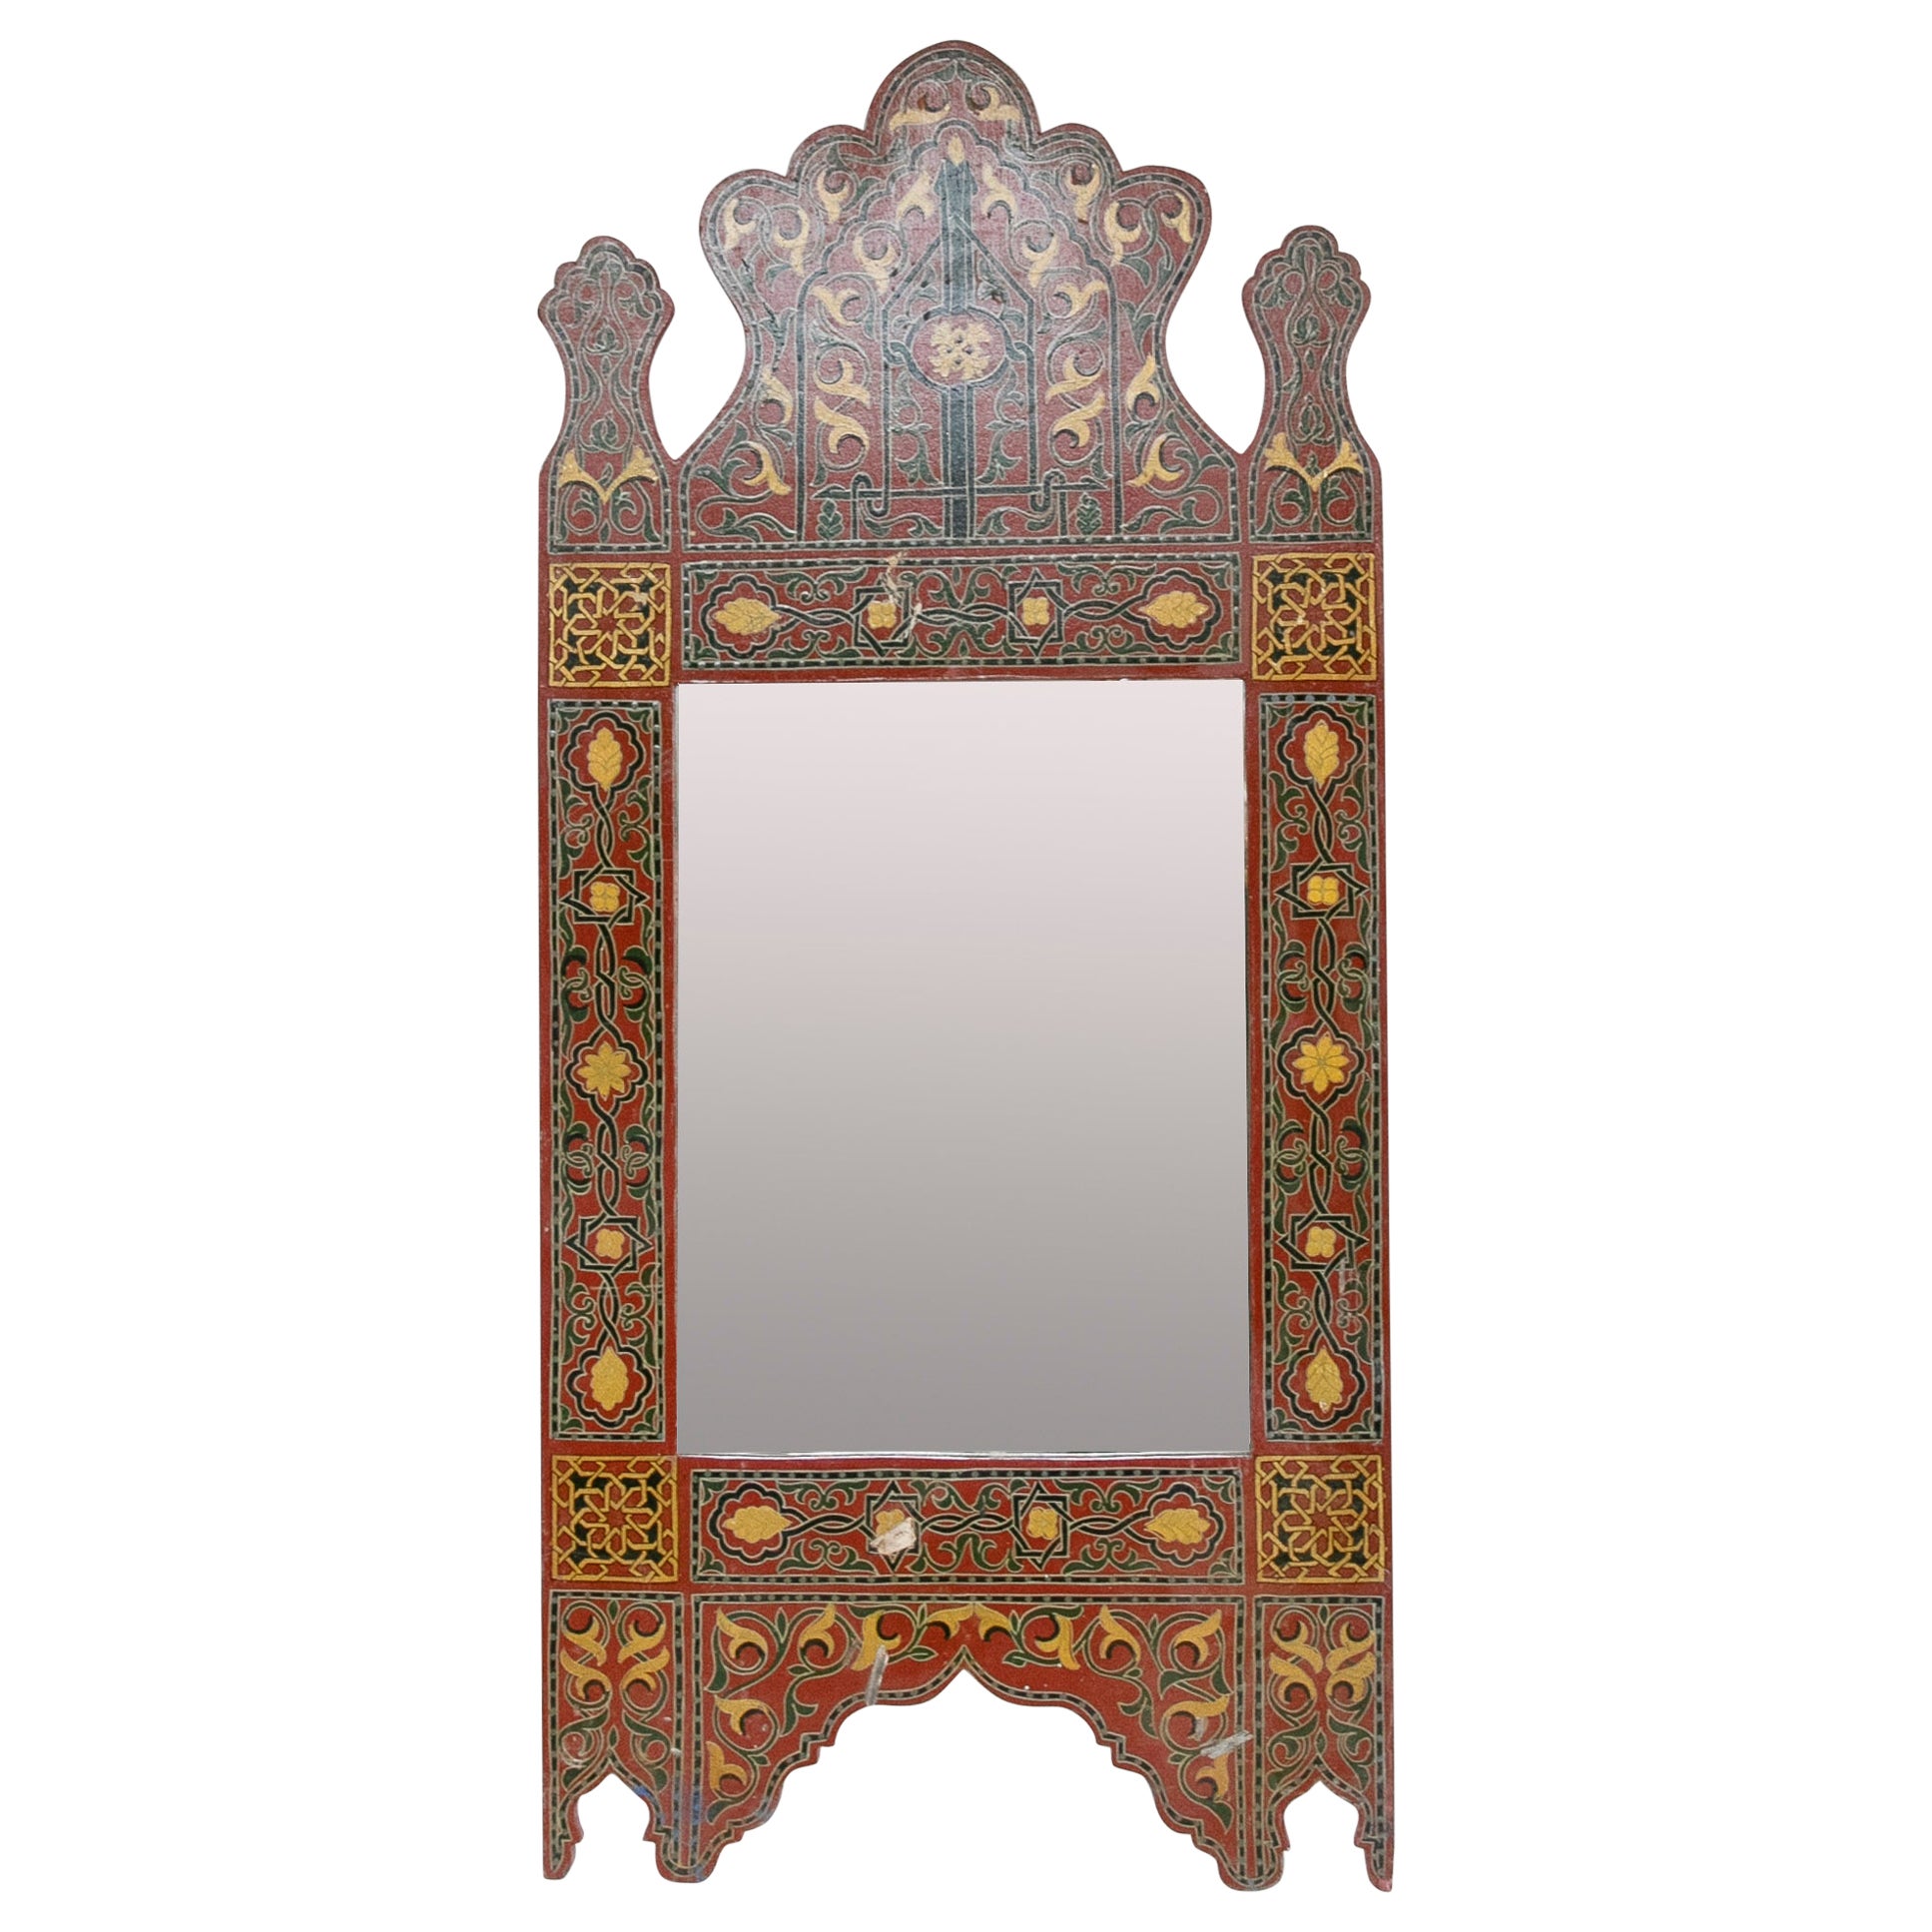 1990er Jahre handbemalter Holzspiegel im marokkanischen Stil mit arabischen Dekorationen